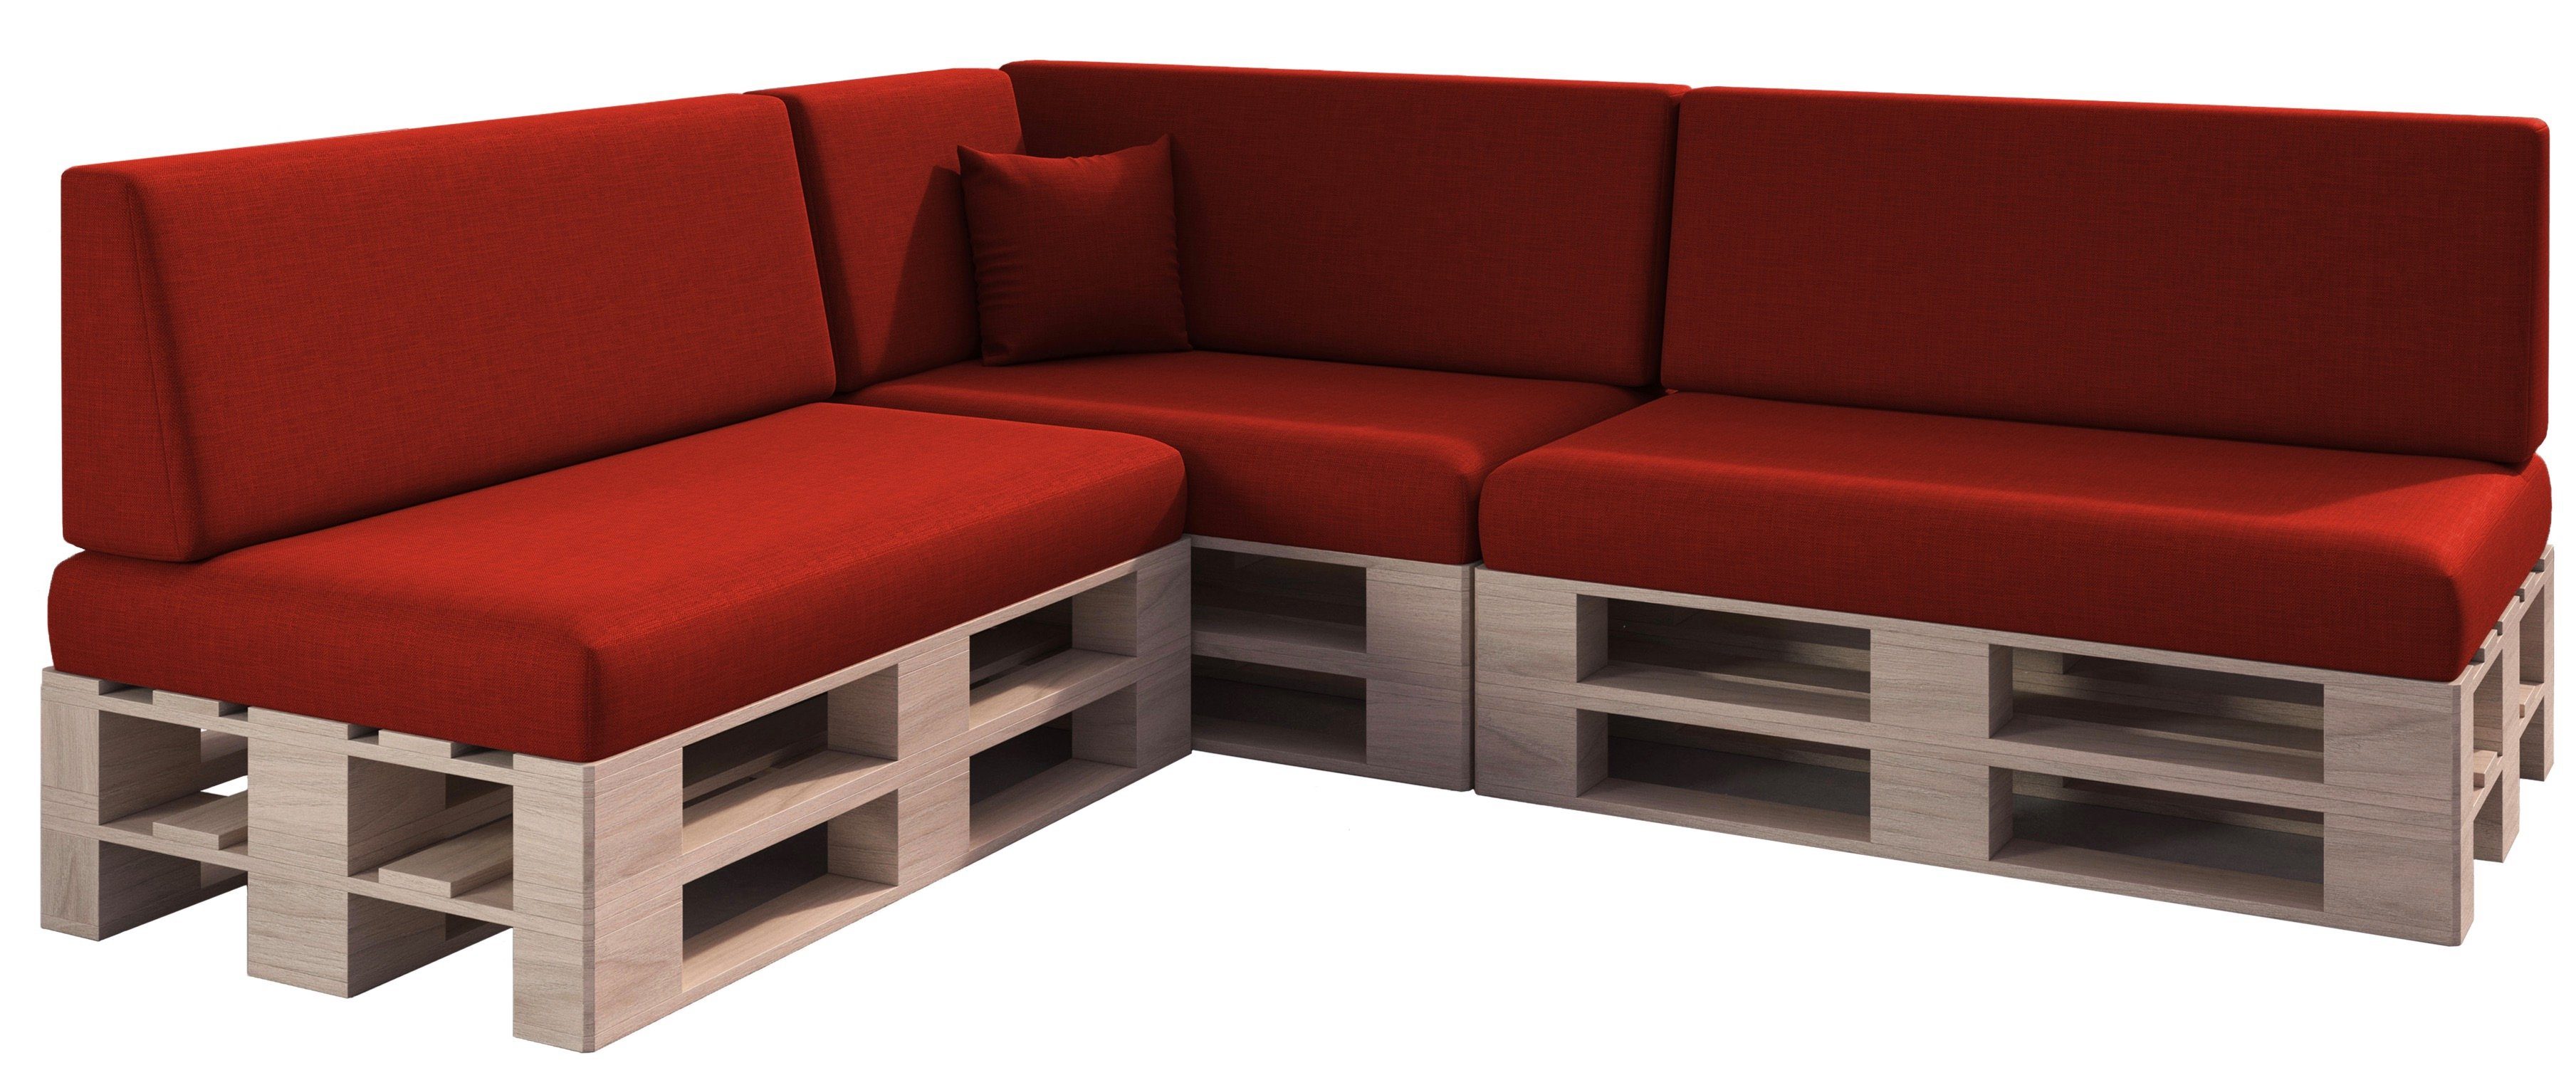 Palettenkissen Palettenauflage Sitzkissen Sofa Euro Paletten Polster MH-GD01 